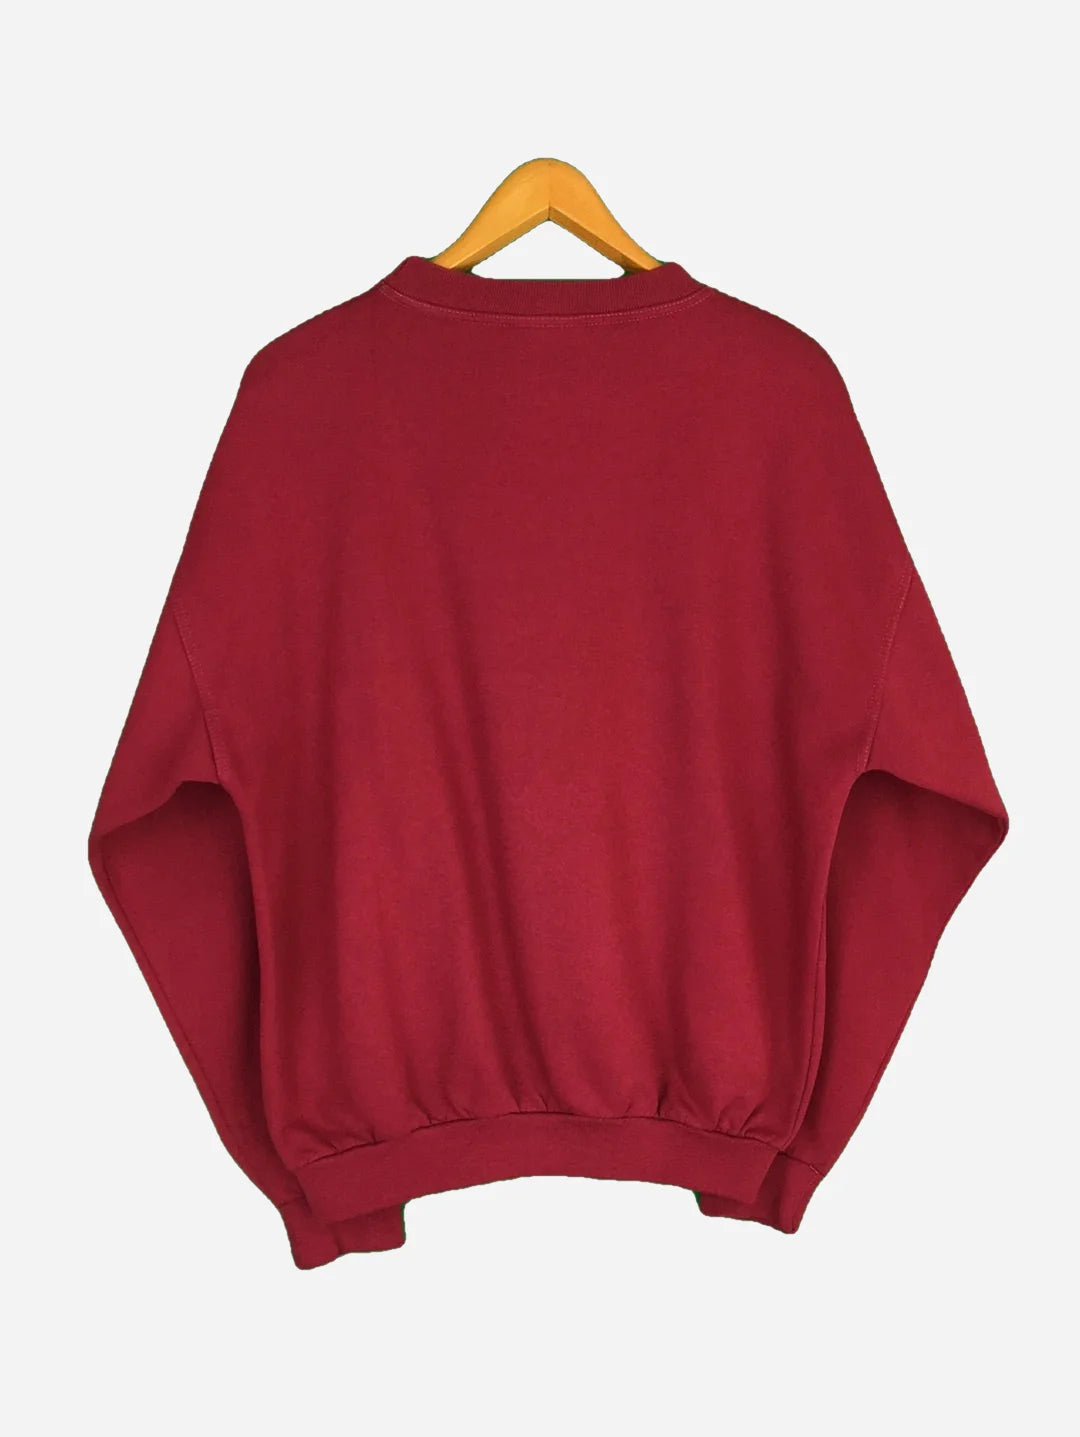 Wrangler Sweater (M)